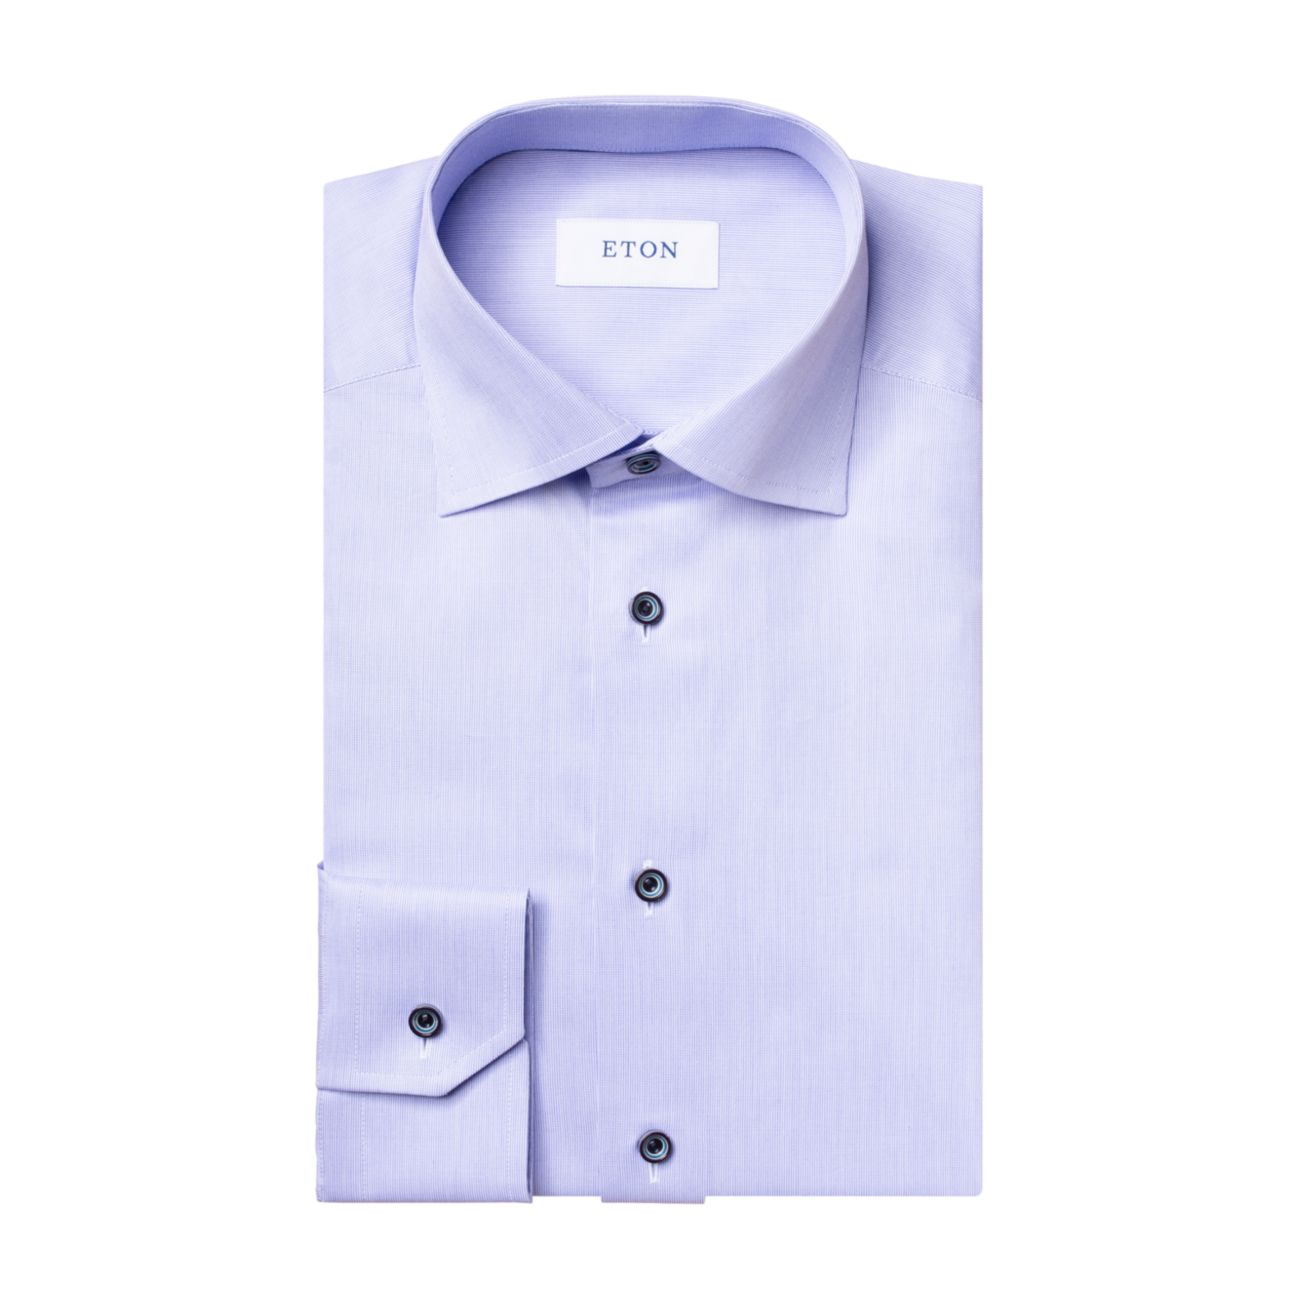 Приталенная классическая рубашка из текстурированного твила Eton